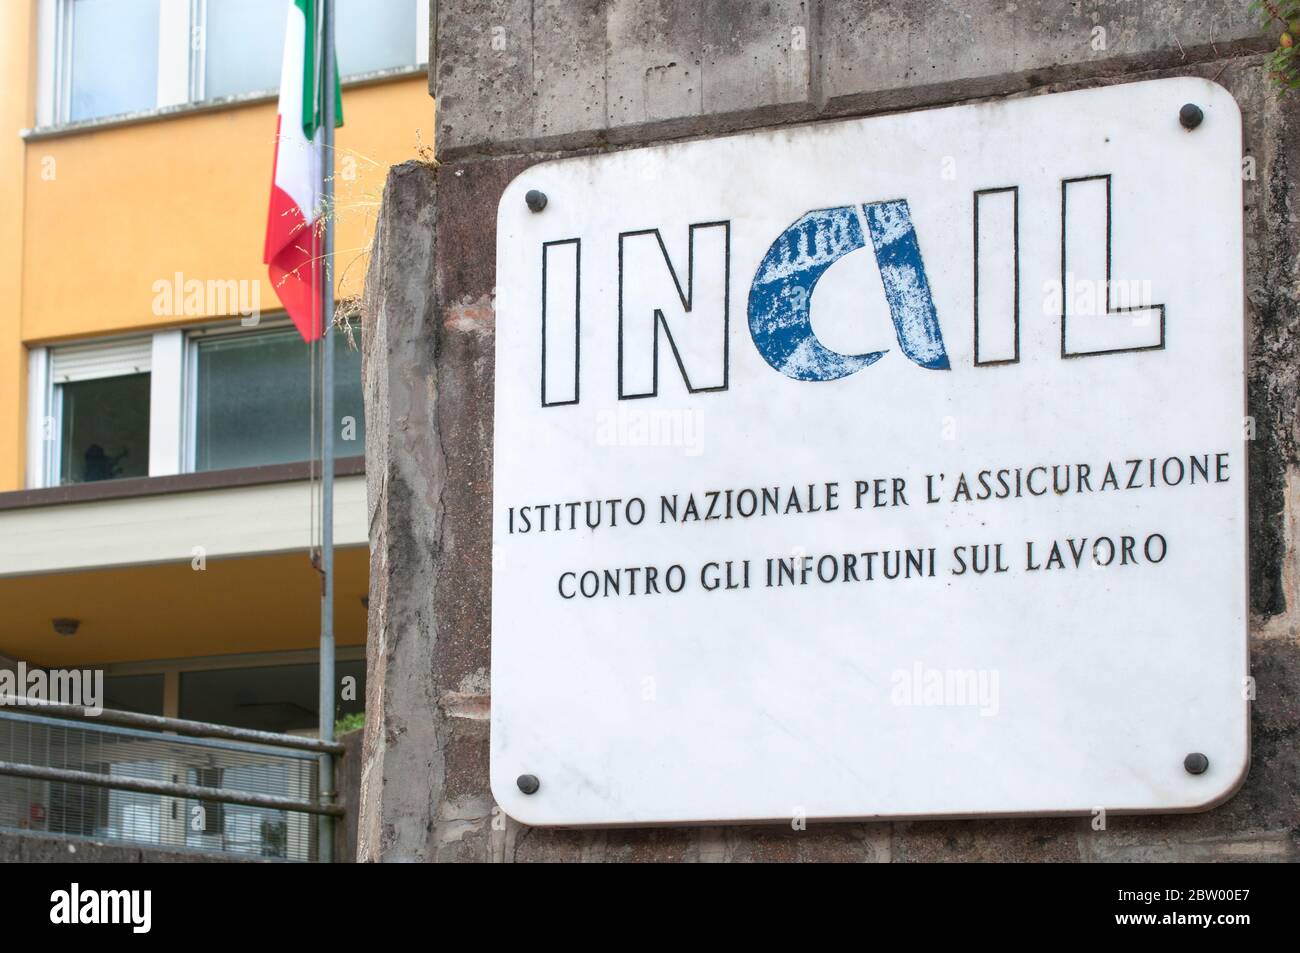 Carrara, Italia - 28 maggio 2020 - placca di marmo all'ingresso di un edificio INAIL (Istituto Nazionale di assicurazione contro gli infortuni sul lavoro) Foto Stock